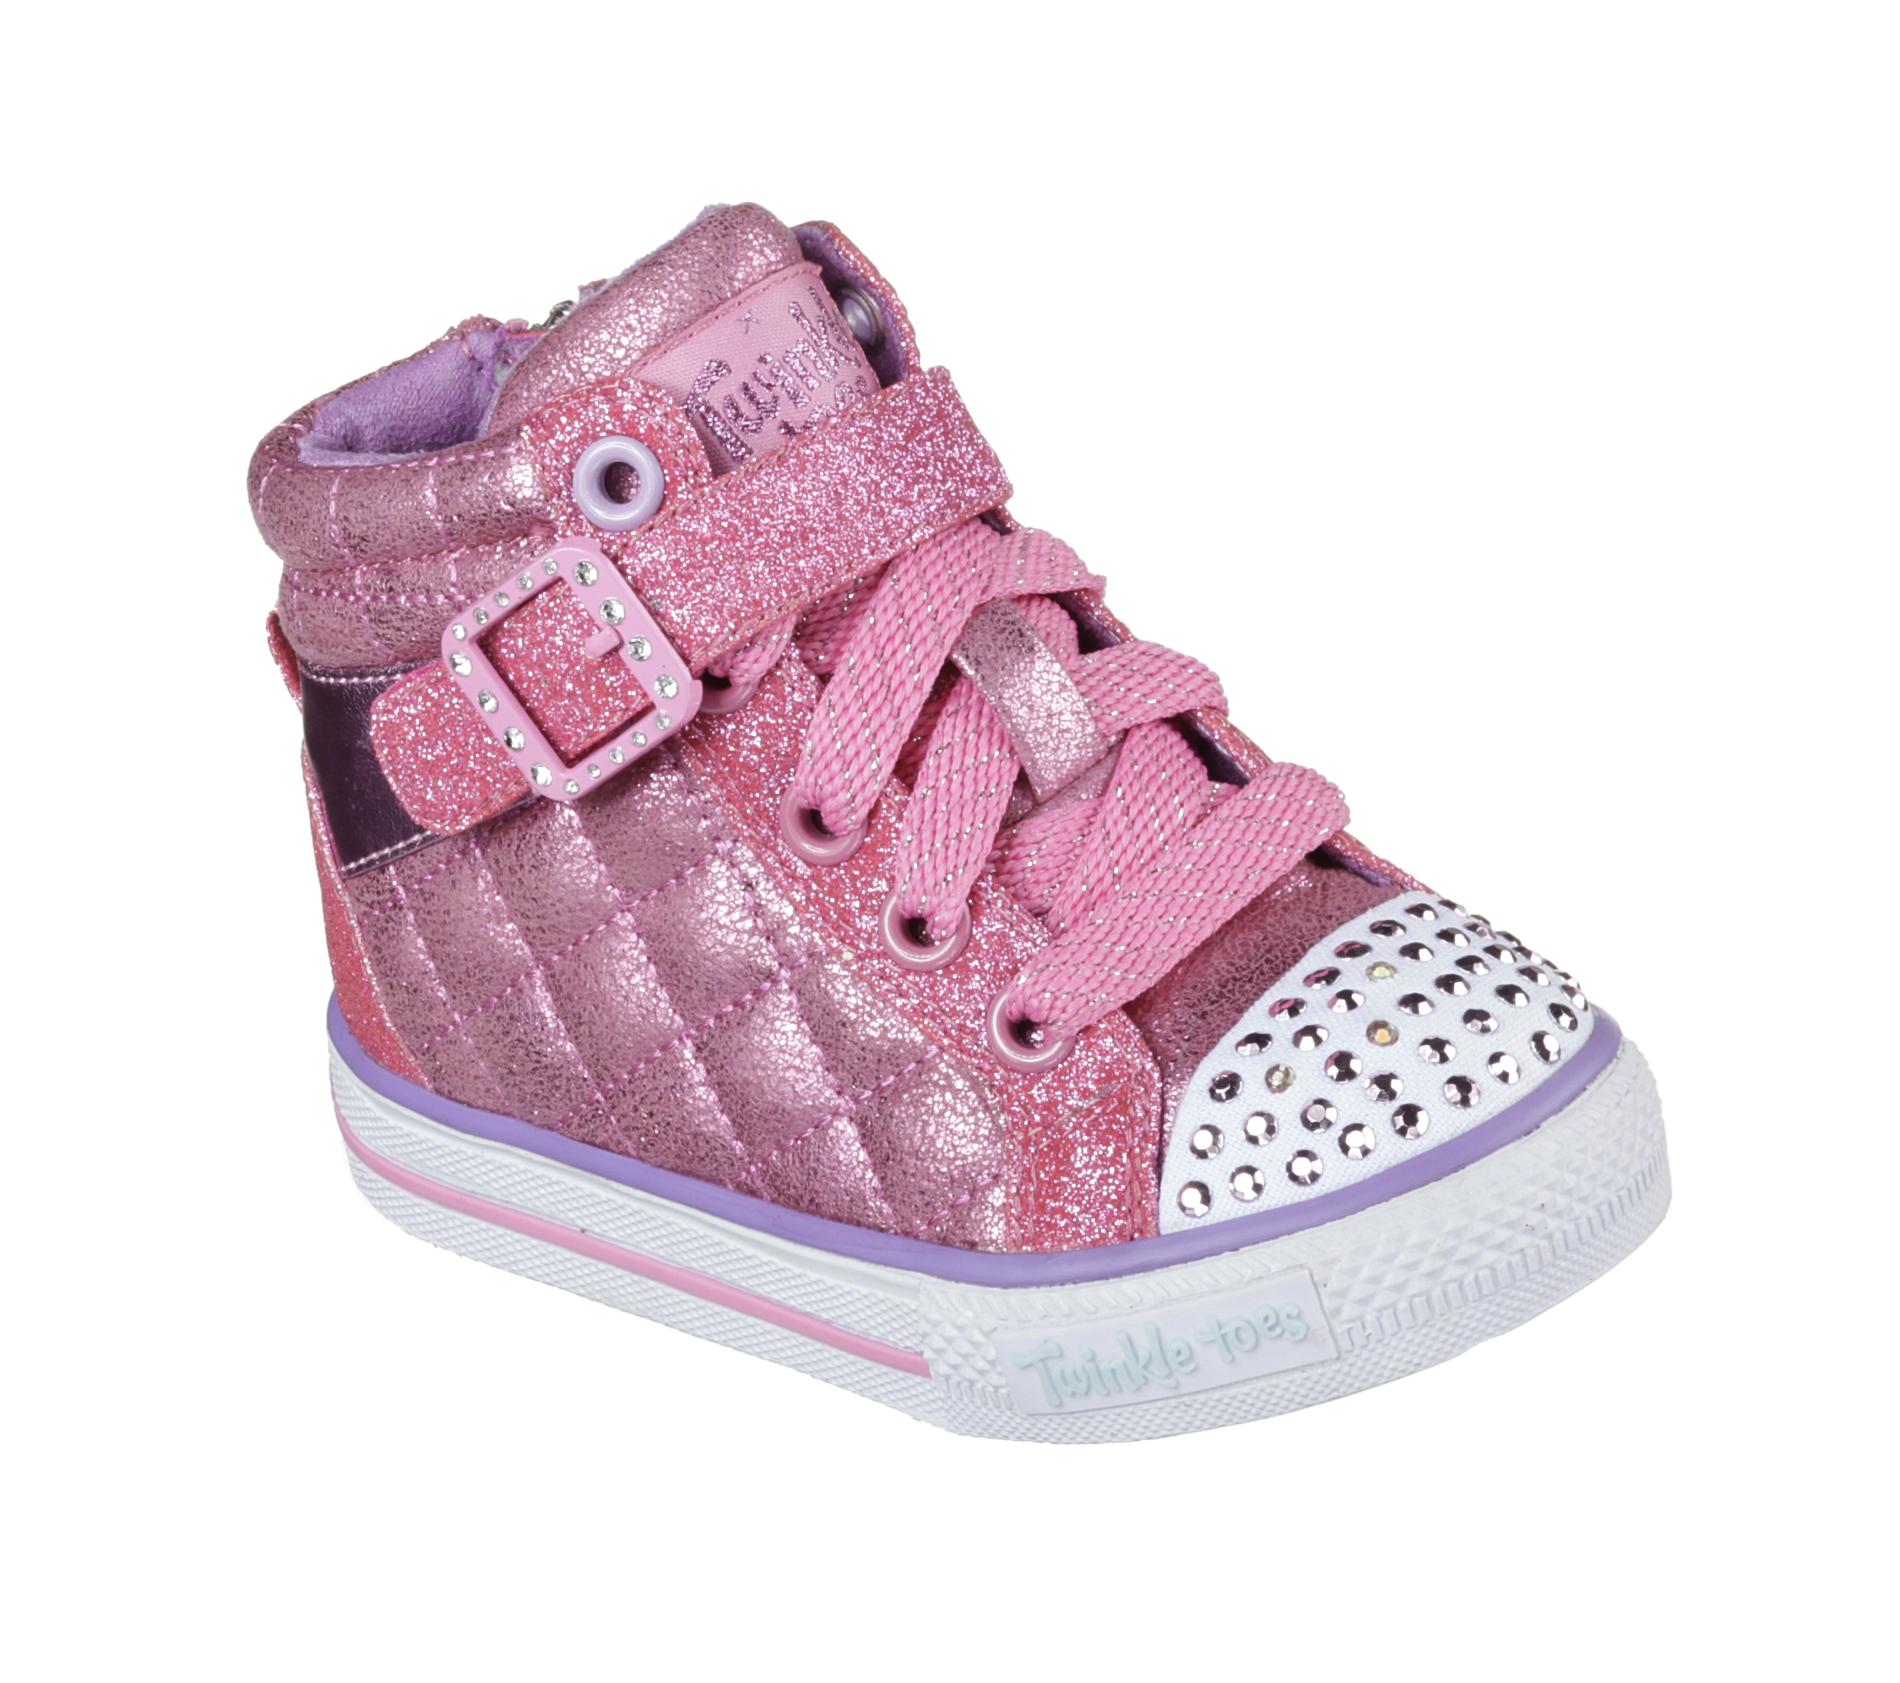 Skechers Toddler Girl's Twinkle Toes Shuffles Sweetheart Sole Sneaker